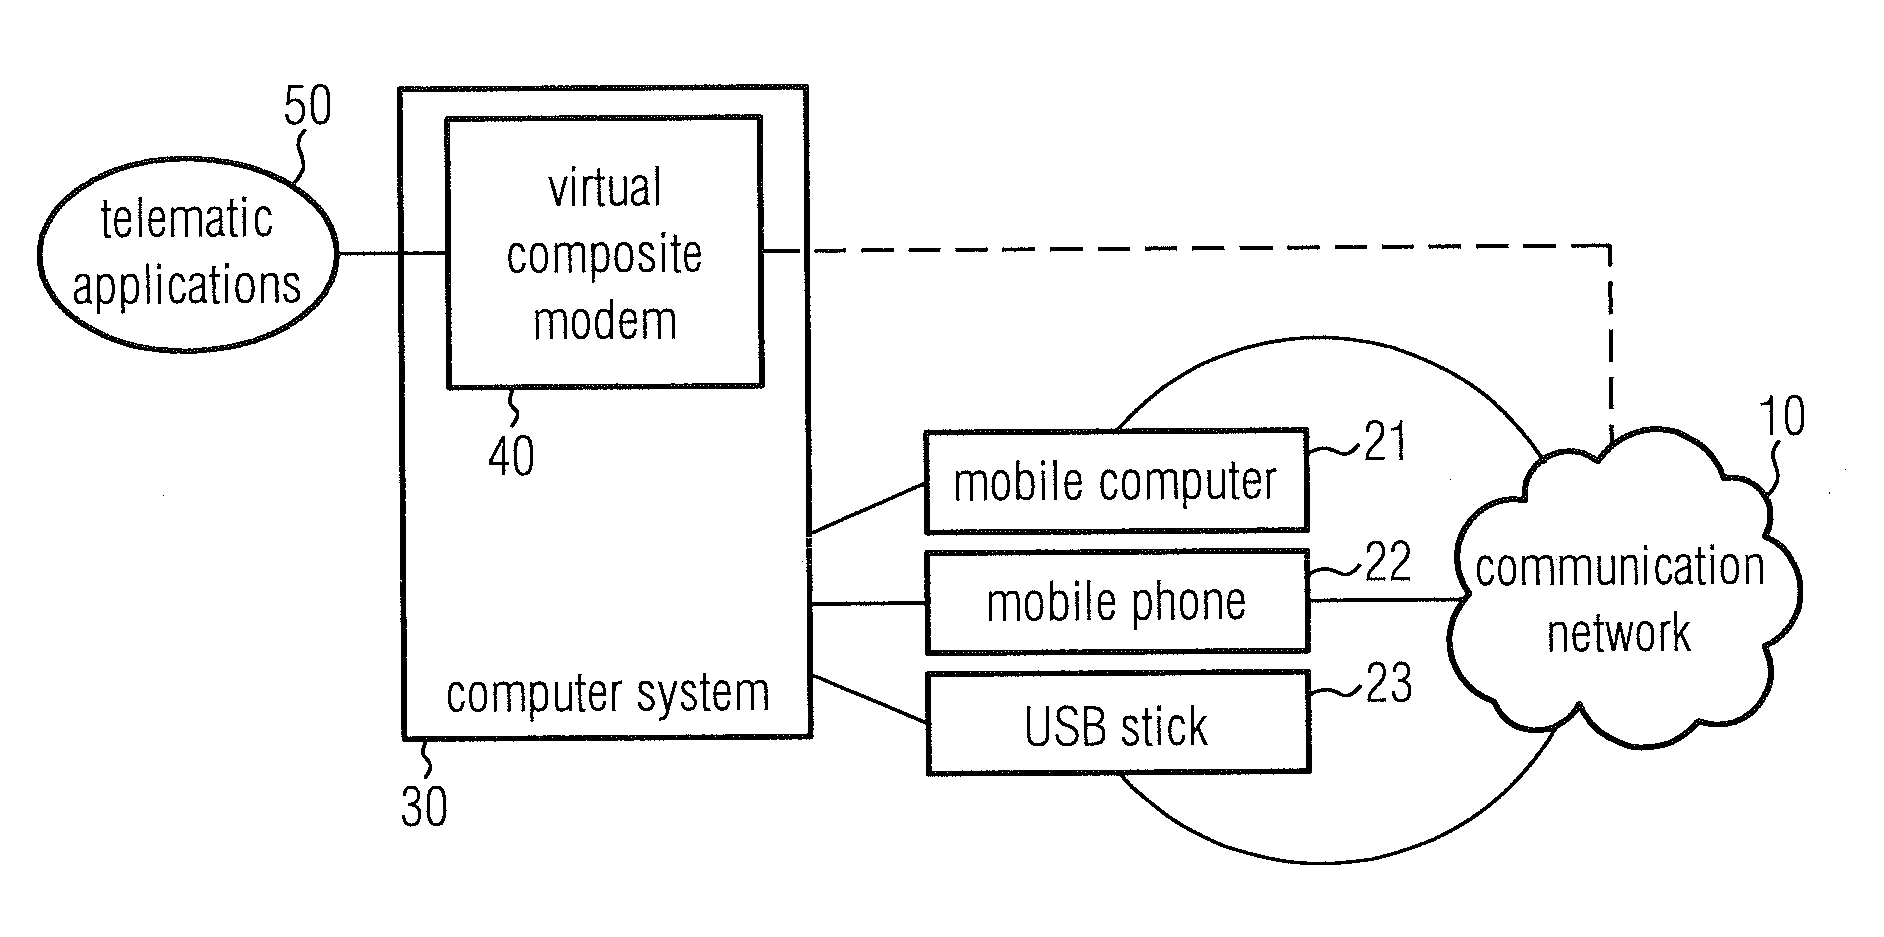 Virtual composite telematic modem